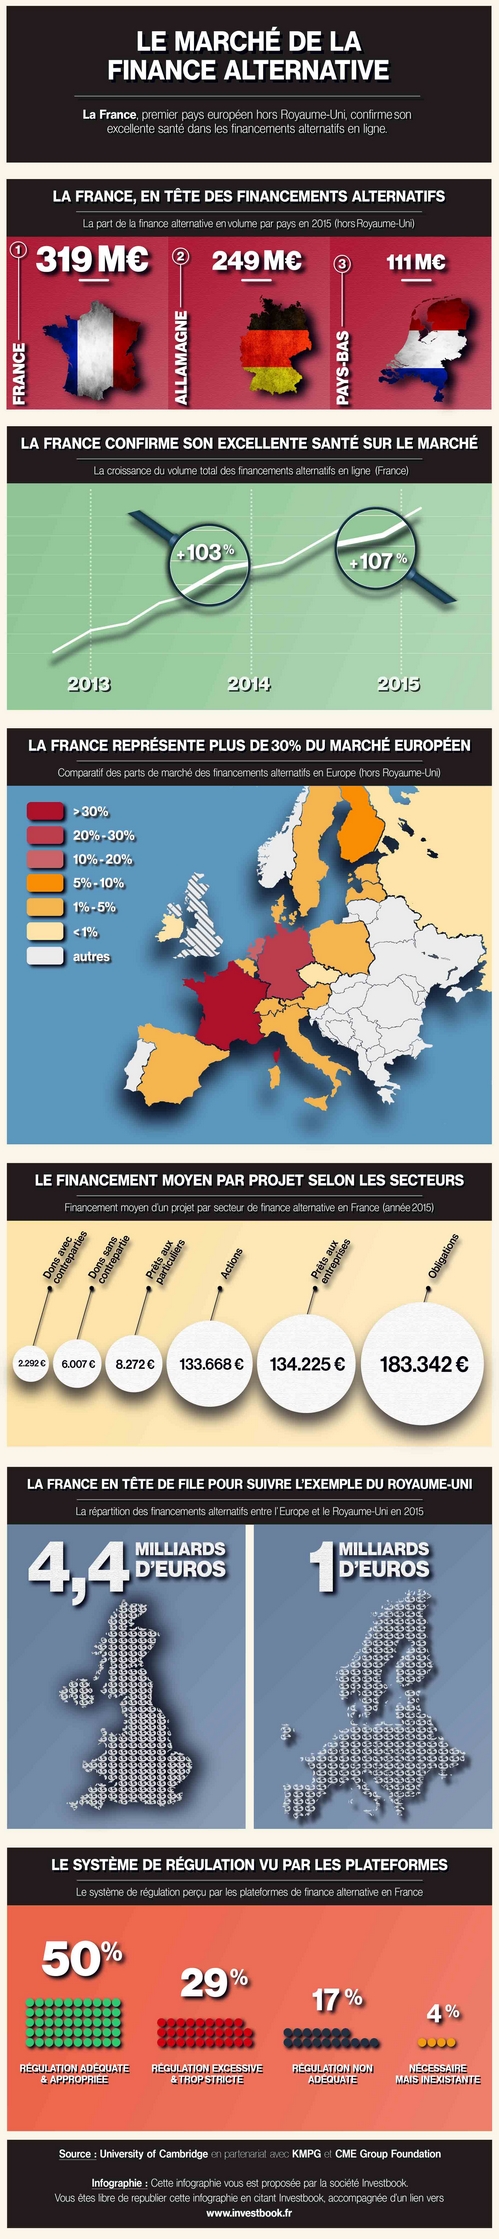 Infographie : évolution de la finance alternative en Europe